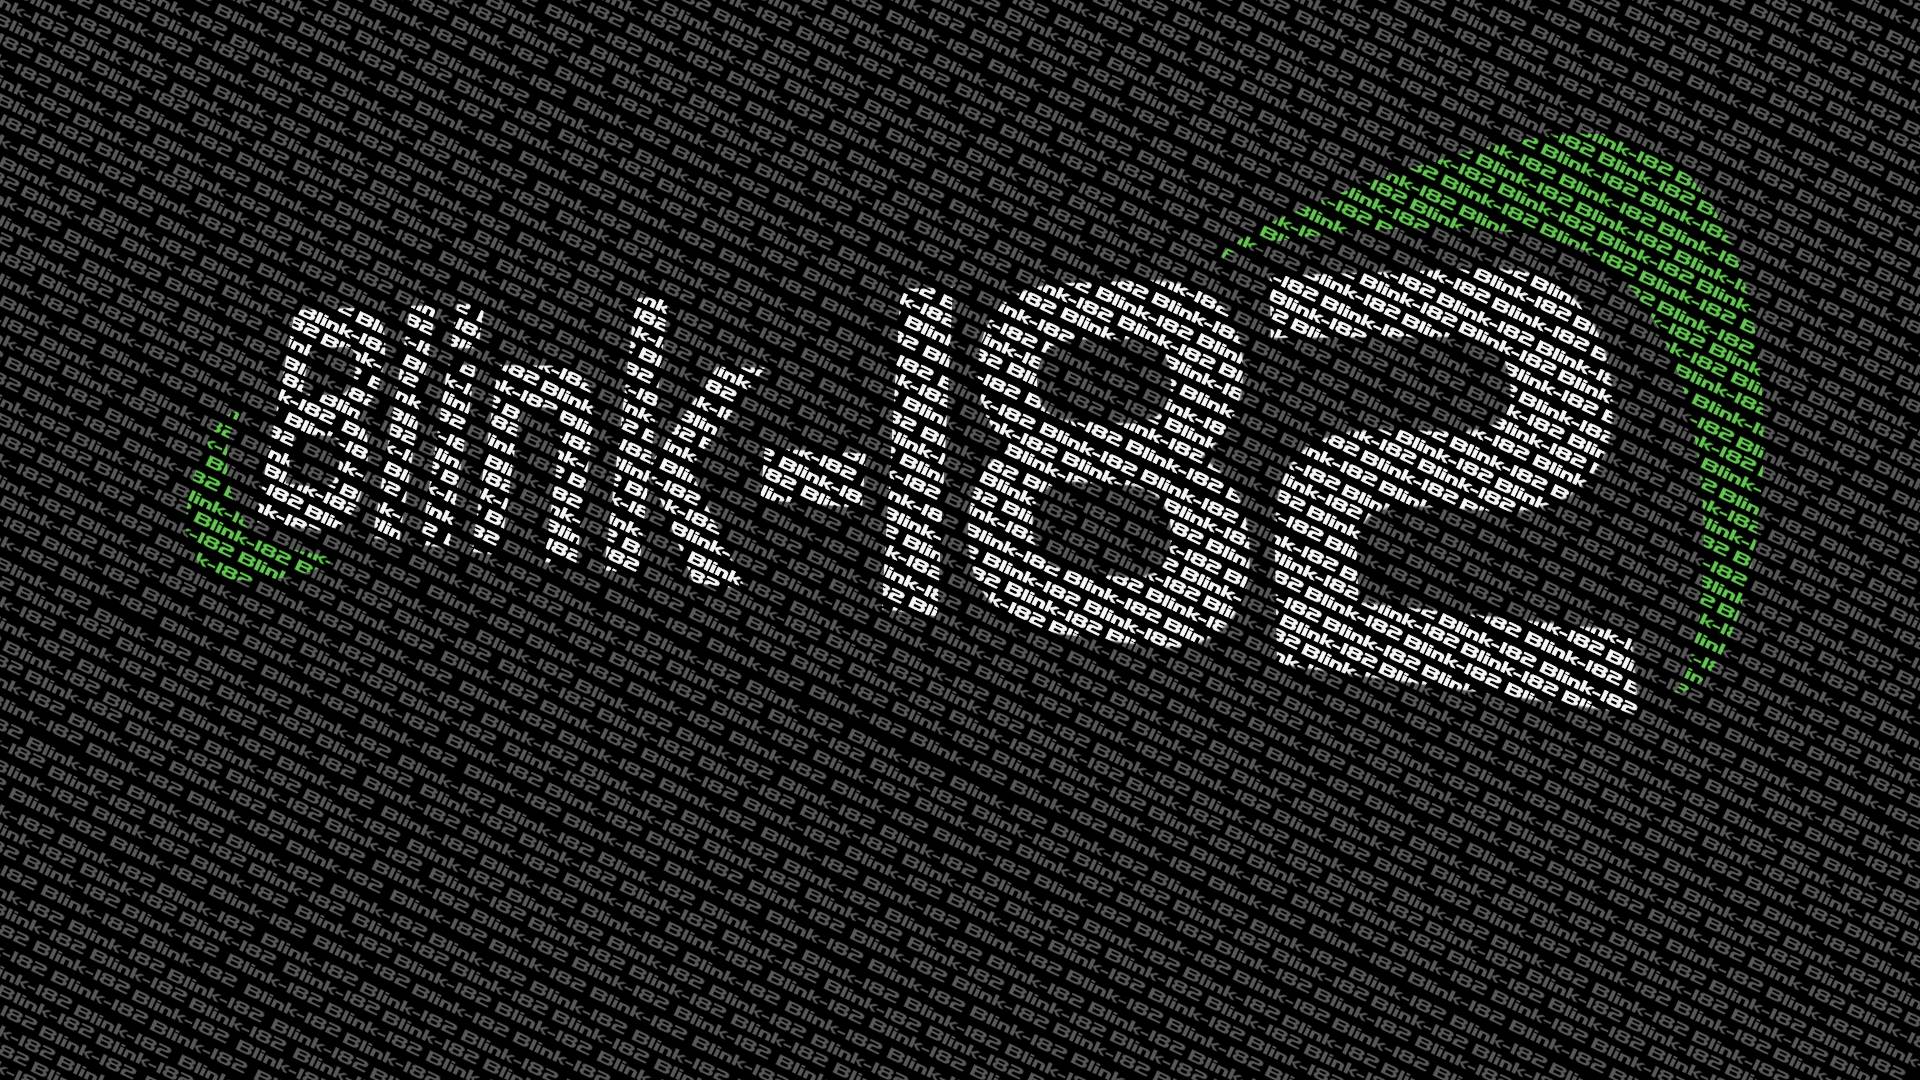 Blink 182 Computer Wallpapers, Desktop Backgrounds 2260x1501 Id